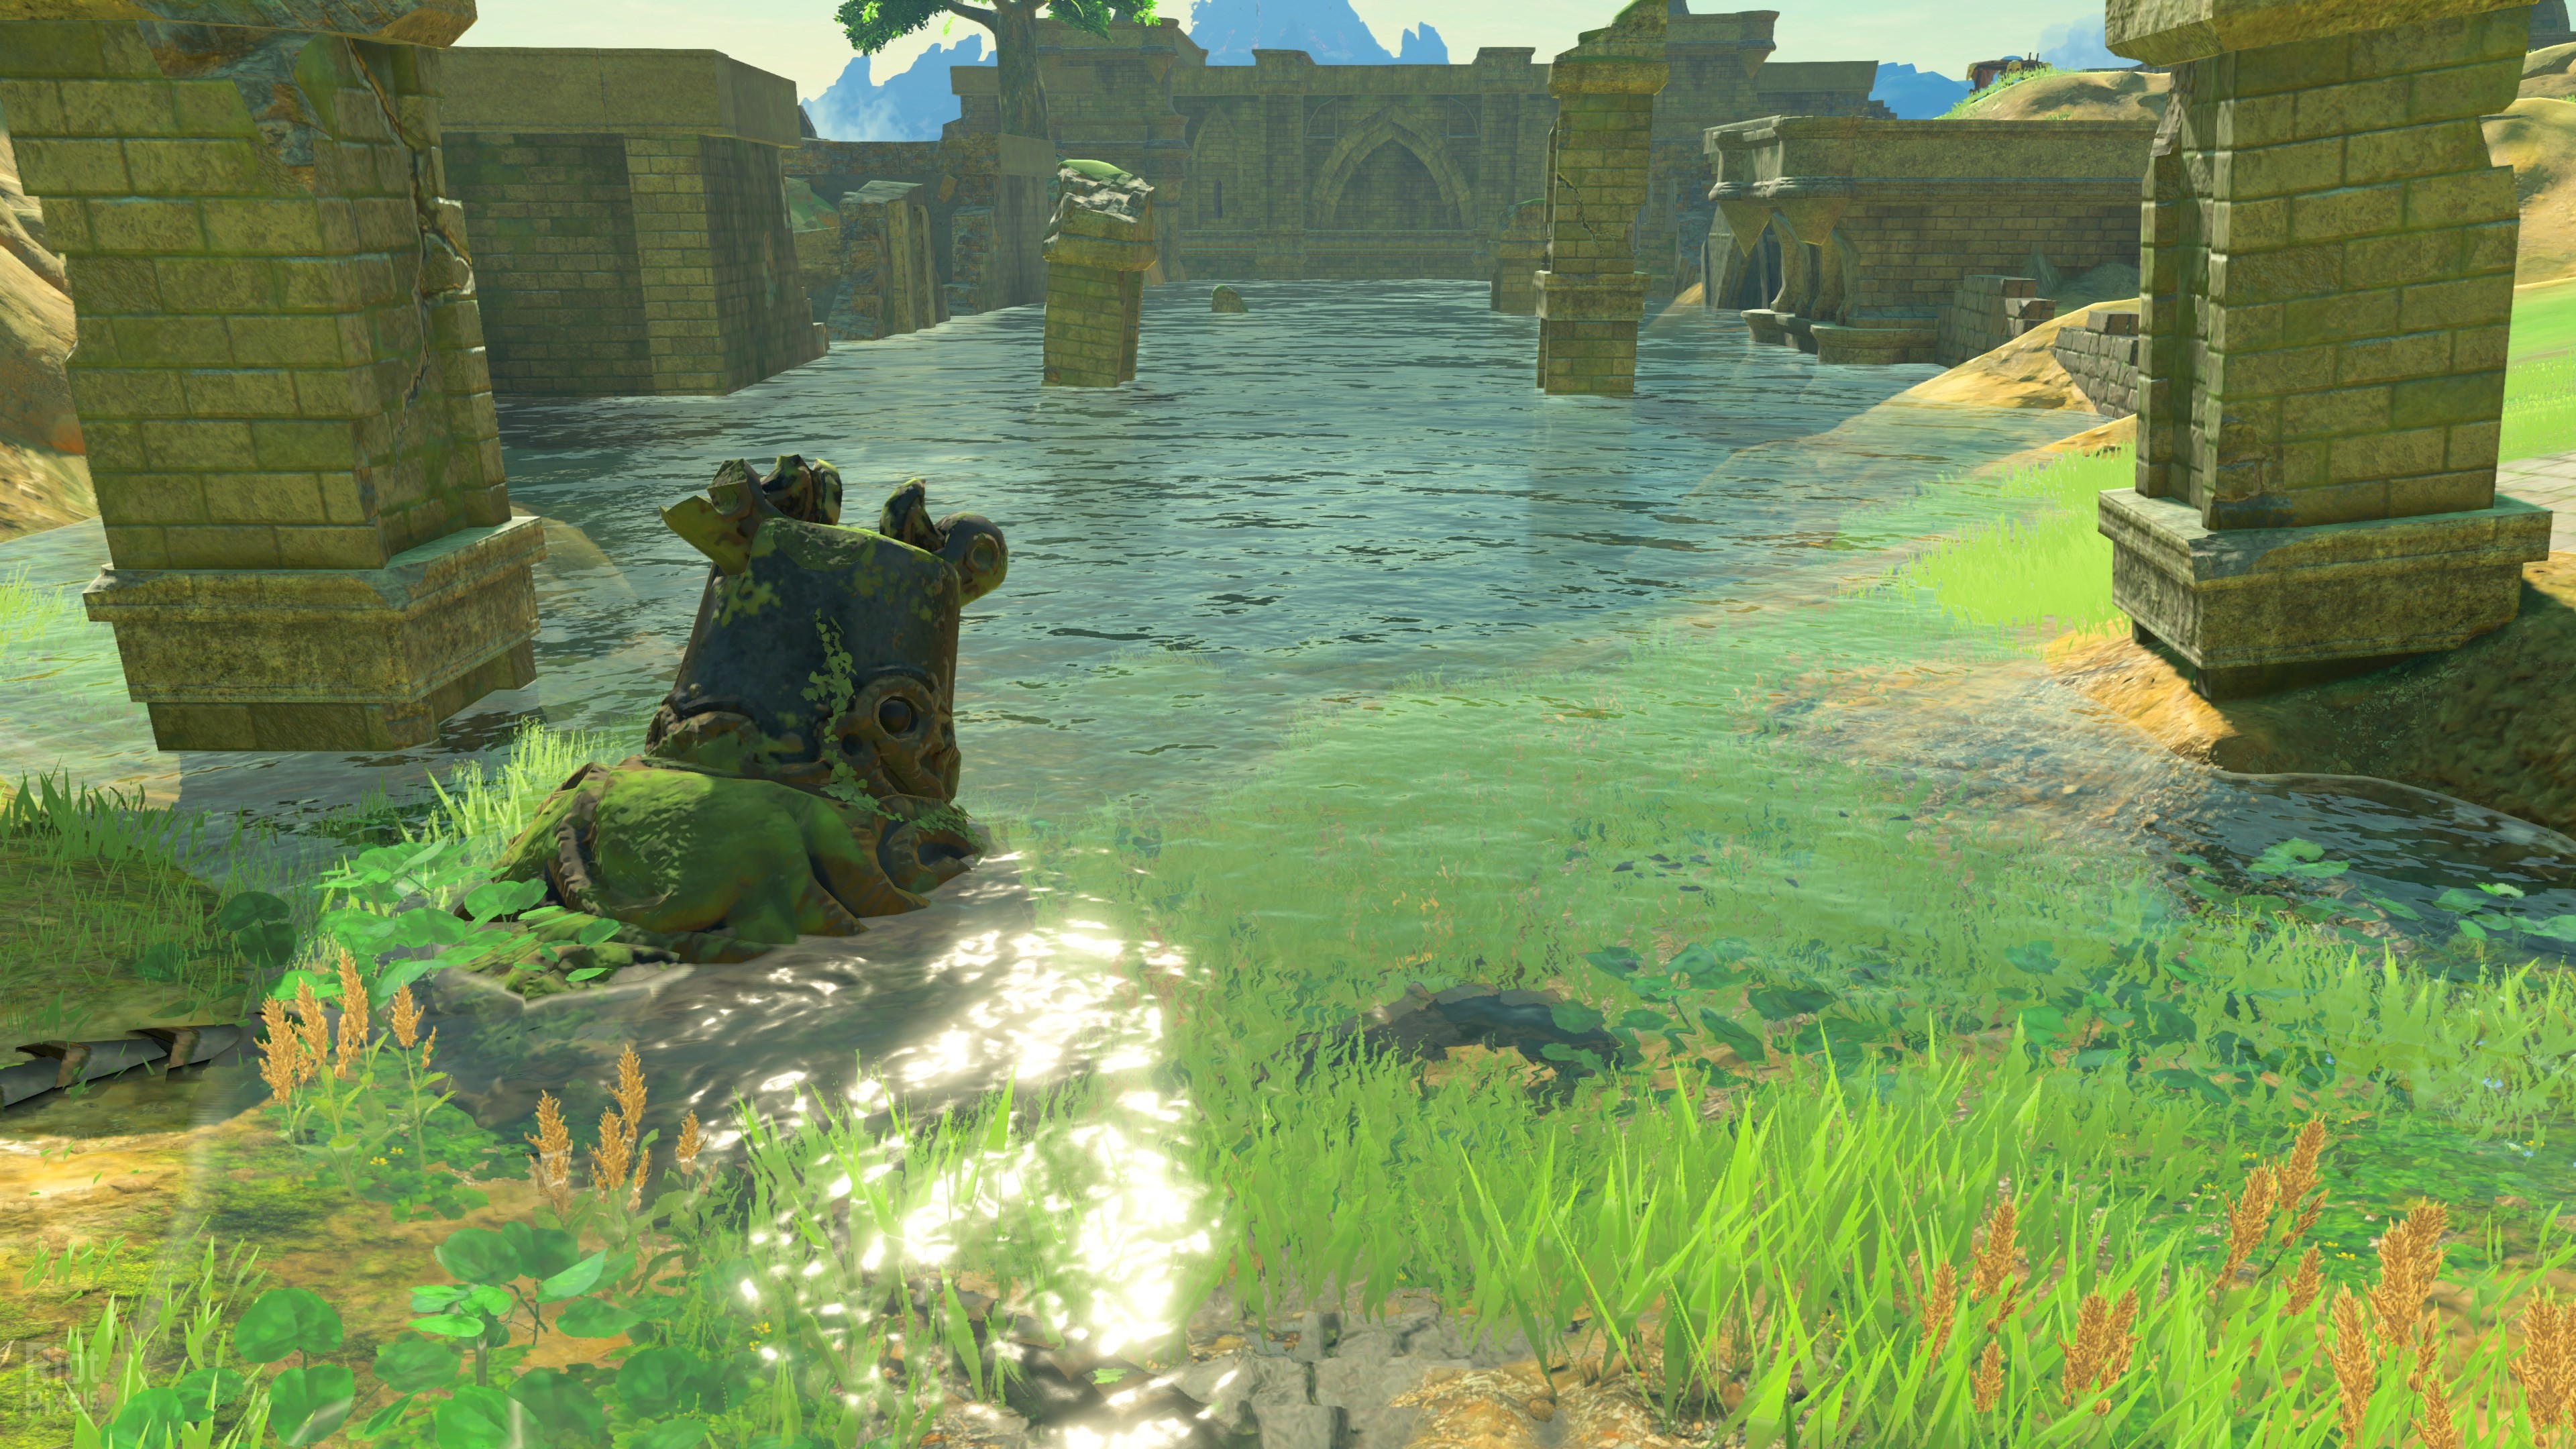 3840x2160, The Legend Of Zelda Breath Of The Wild 4k - Zelda Breath Of The Wild - HD Wallpaper 